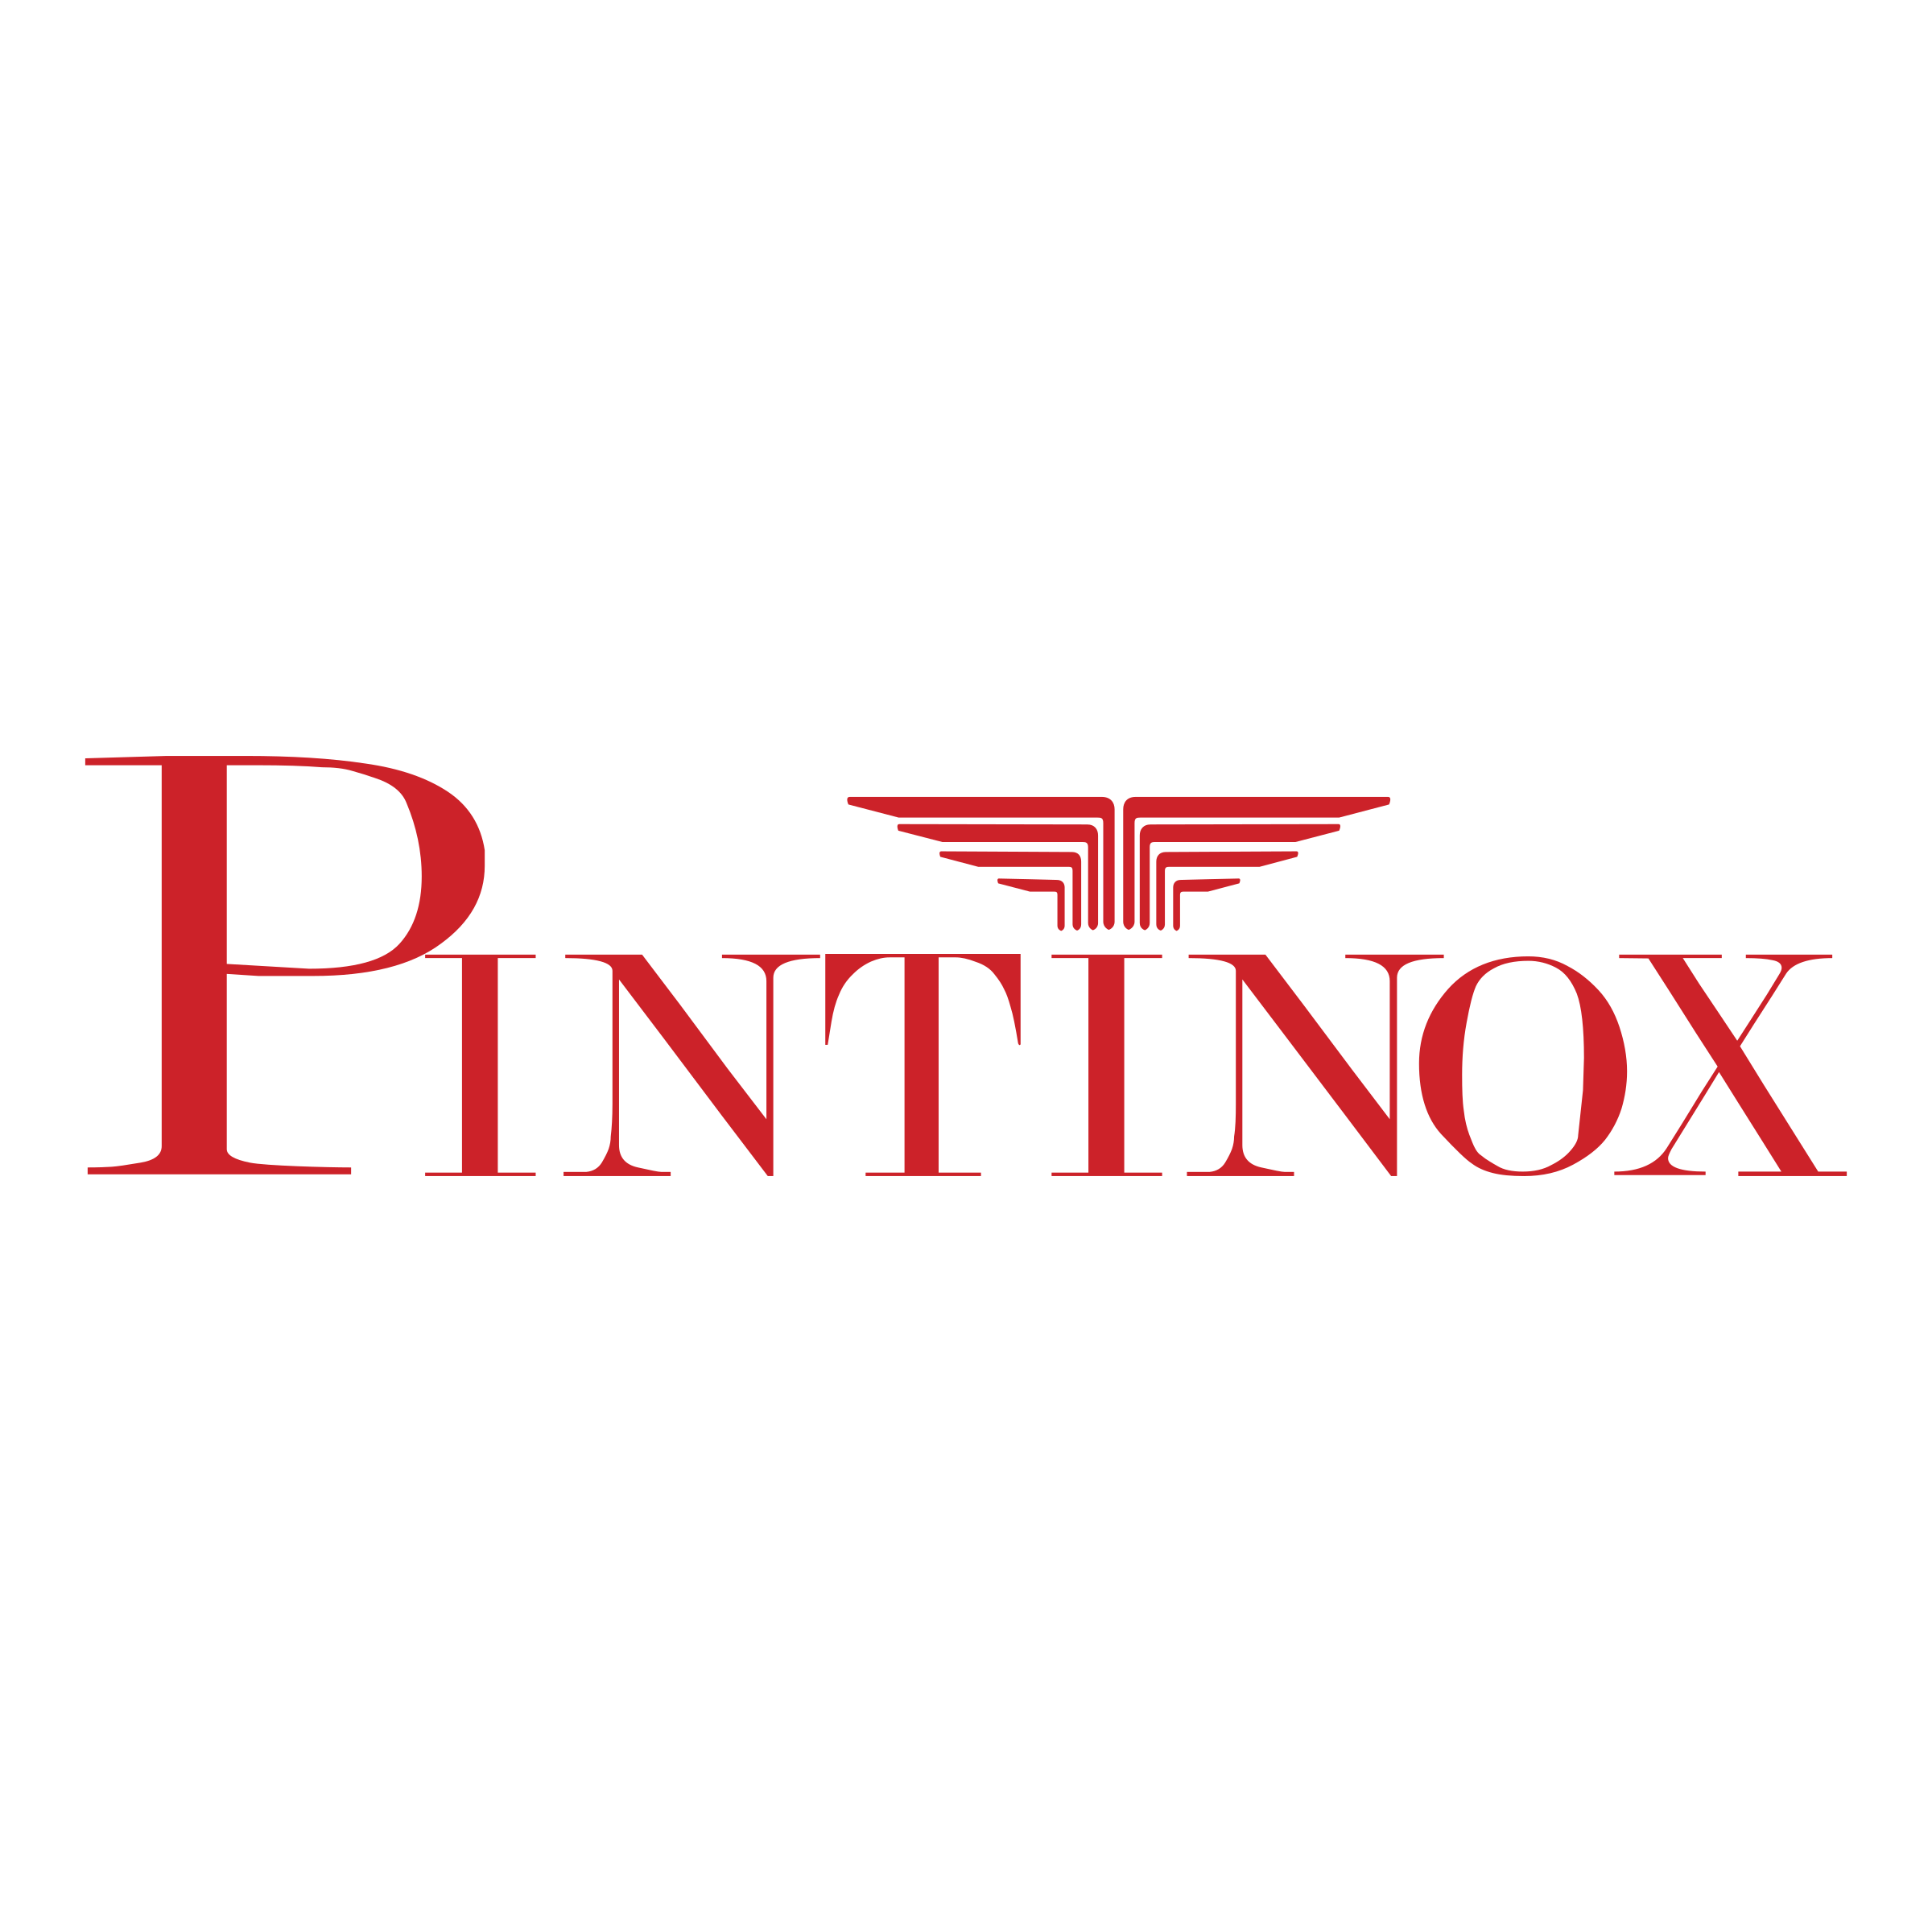 pintinox-logo-png-transparent